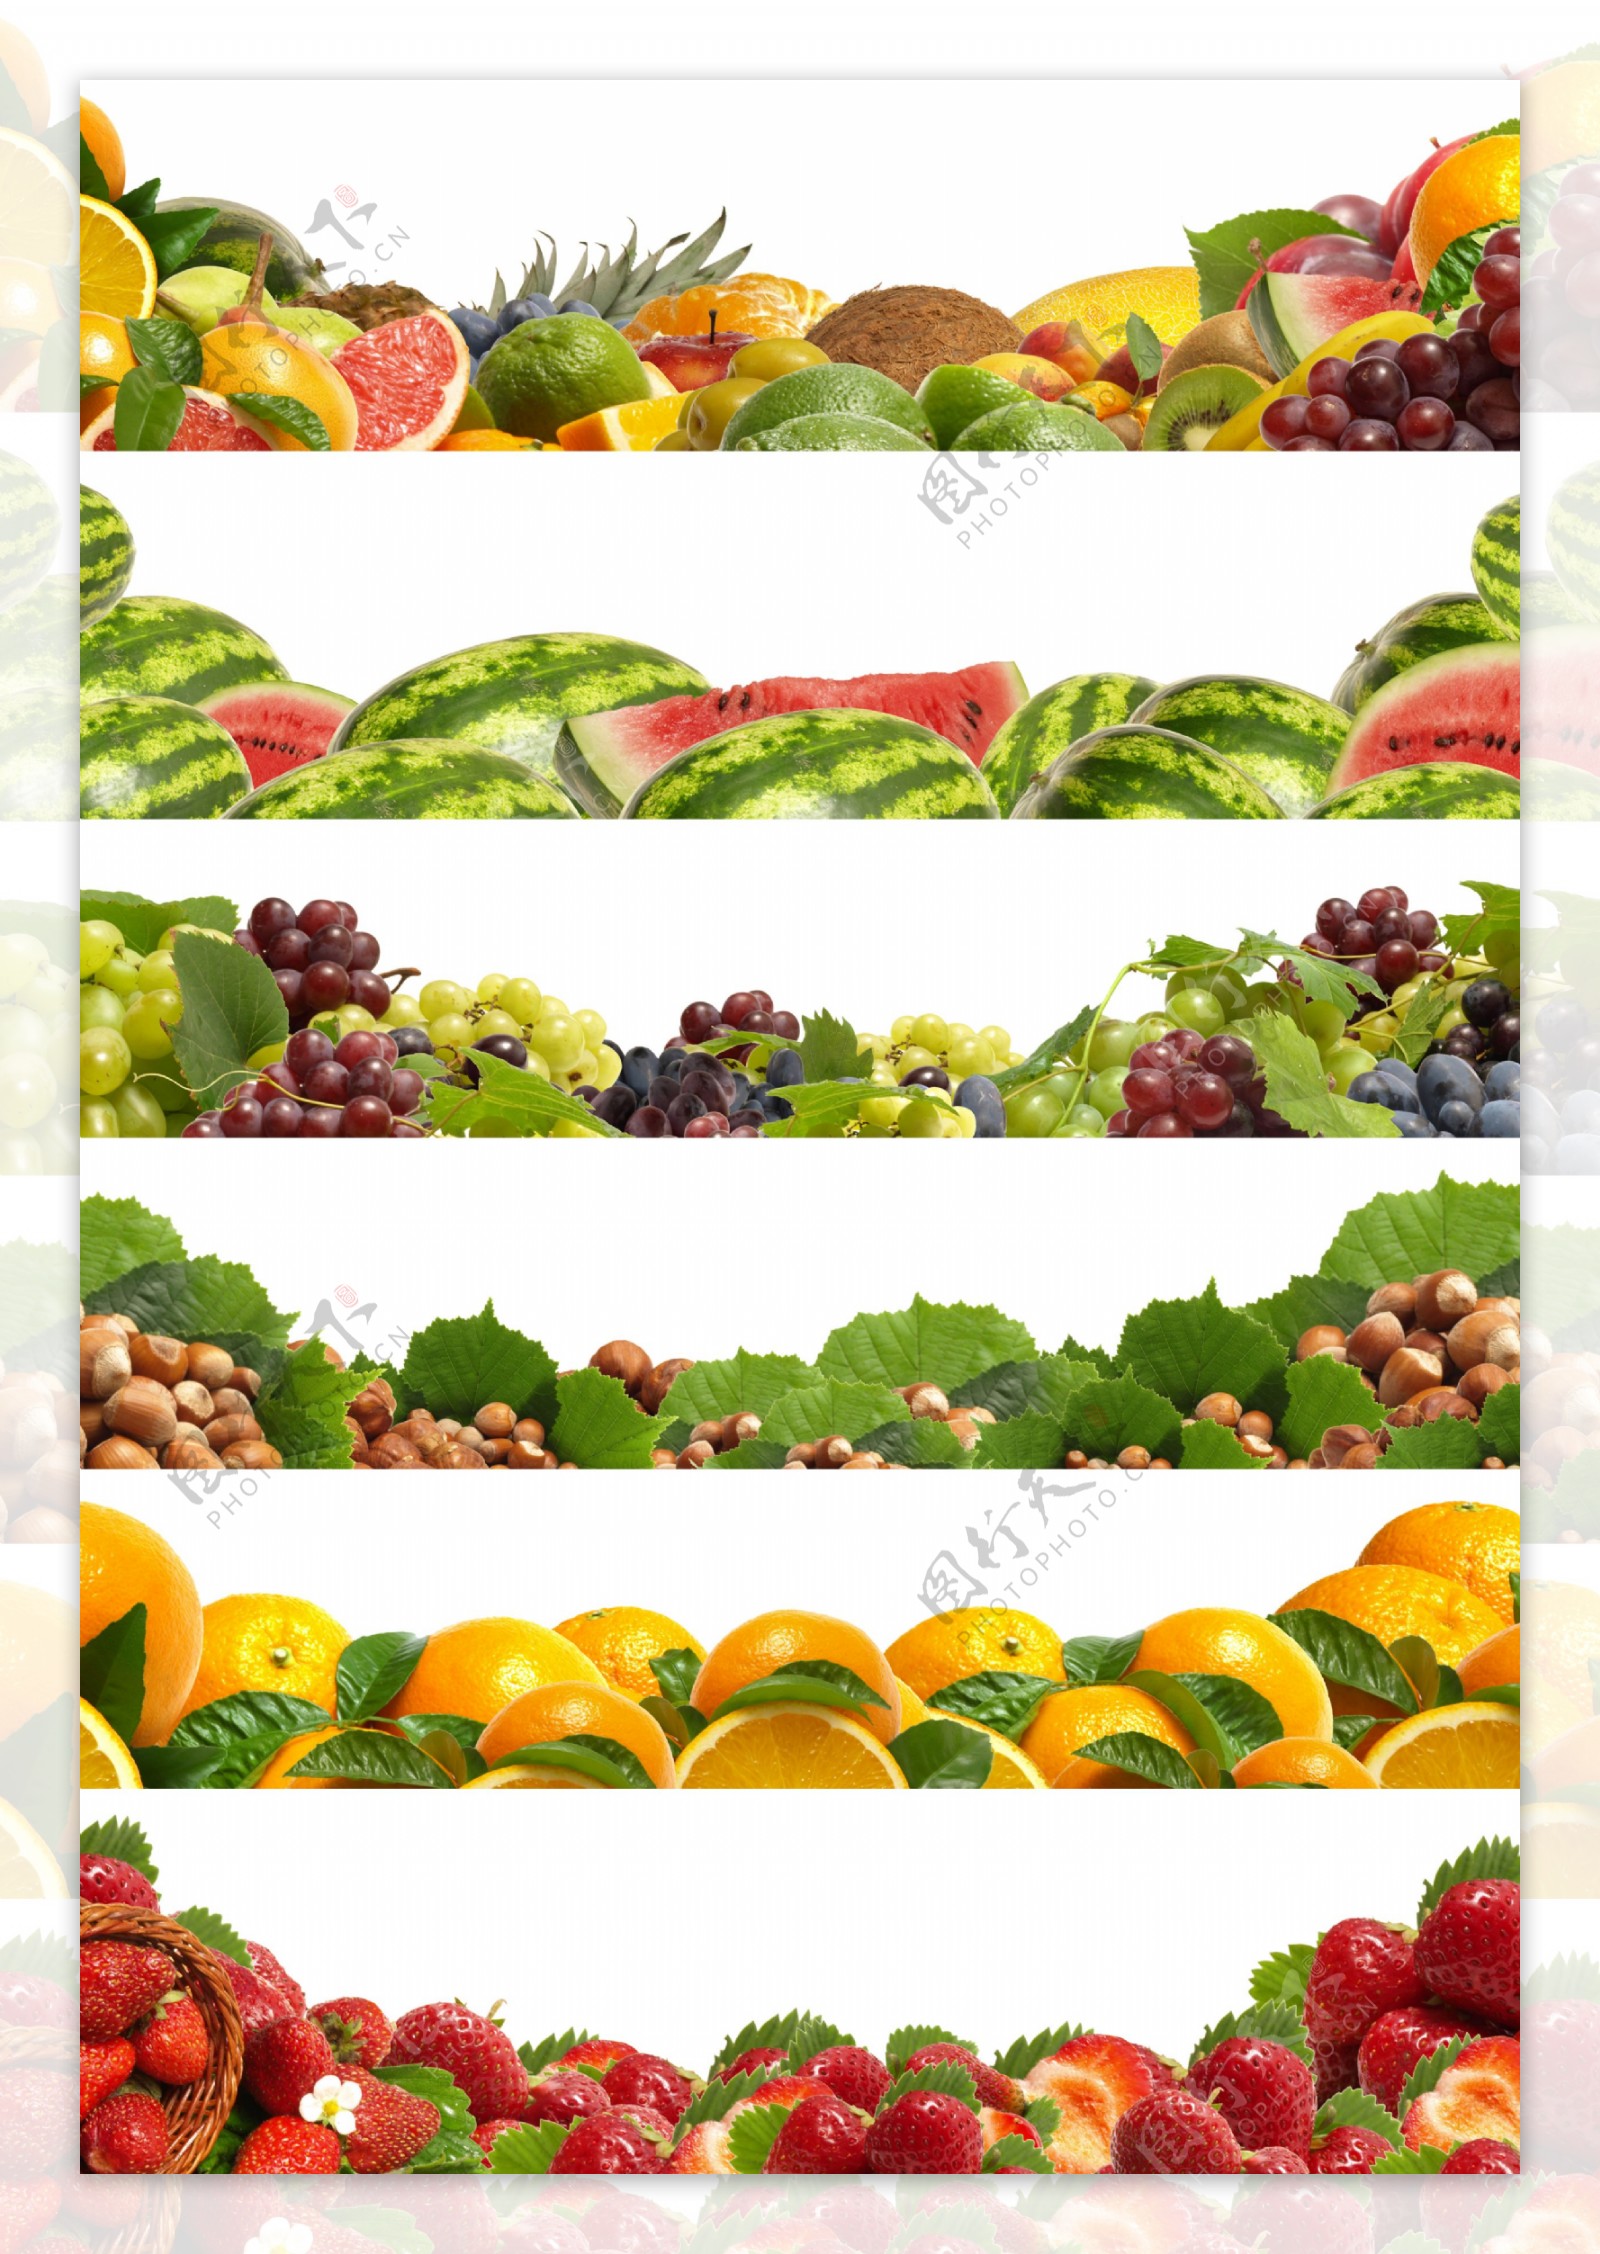 水果蔬菜大集合图片